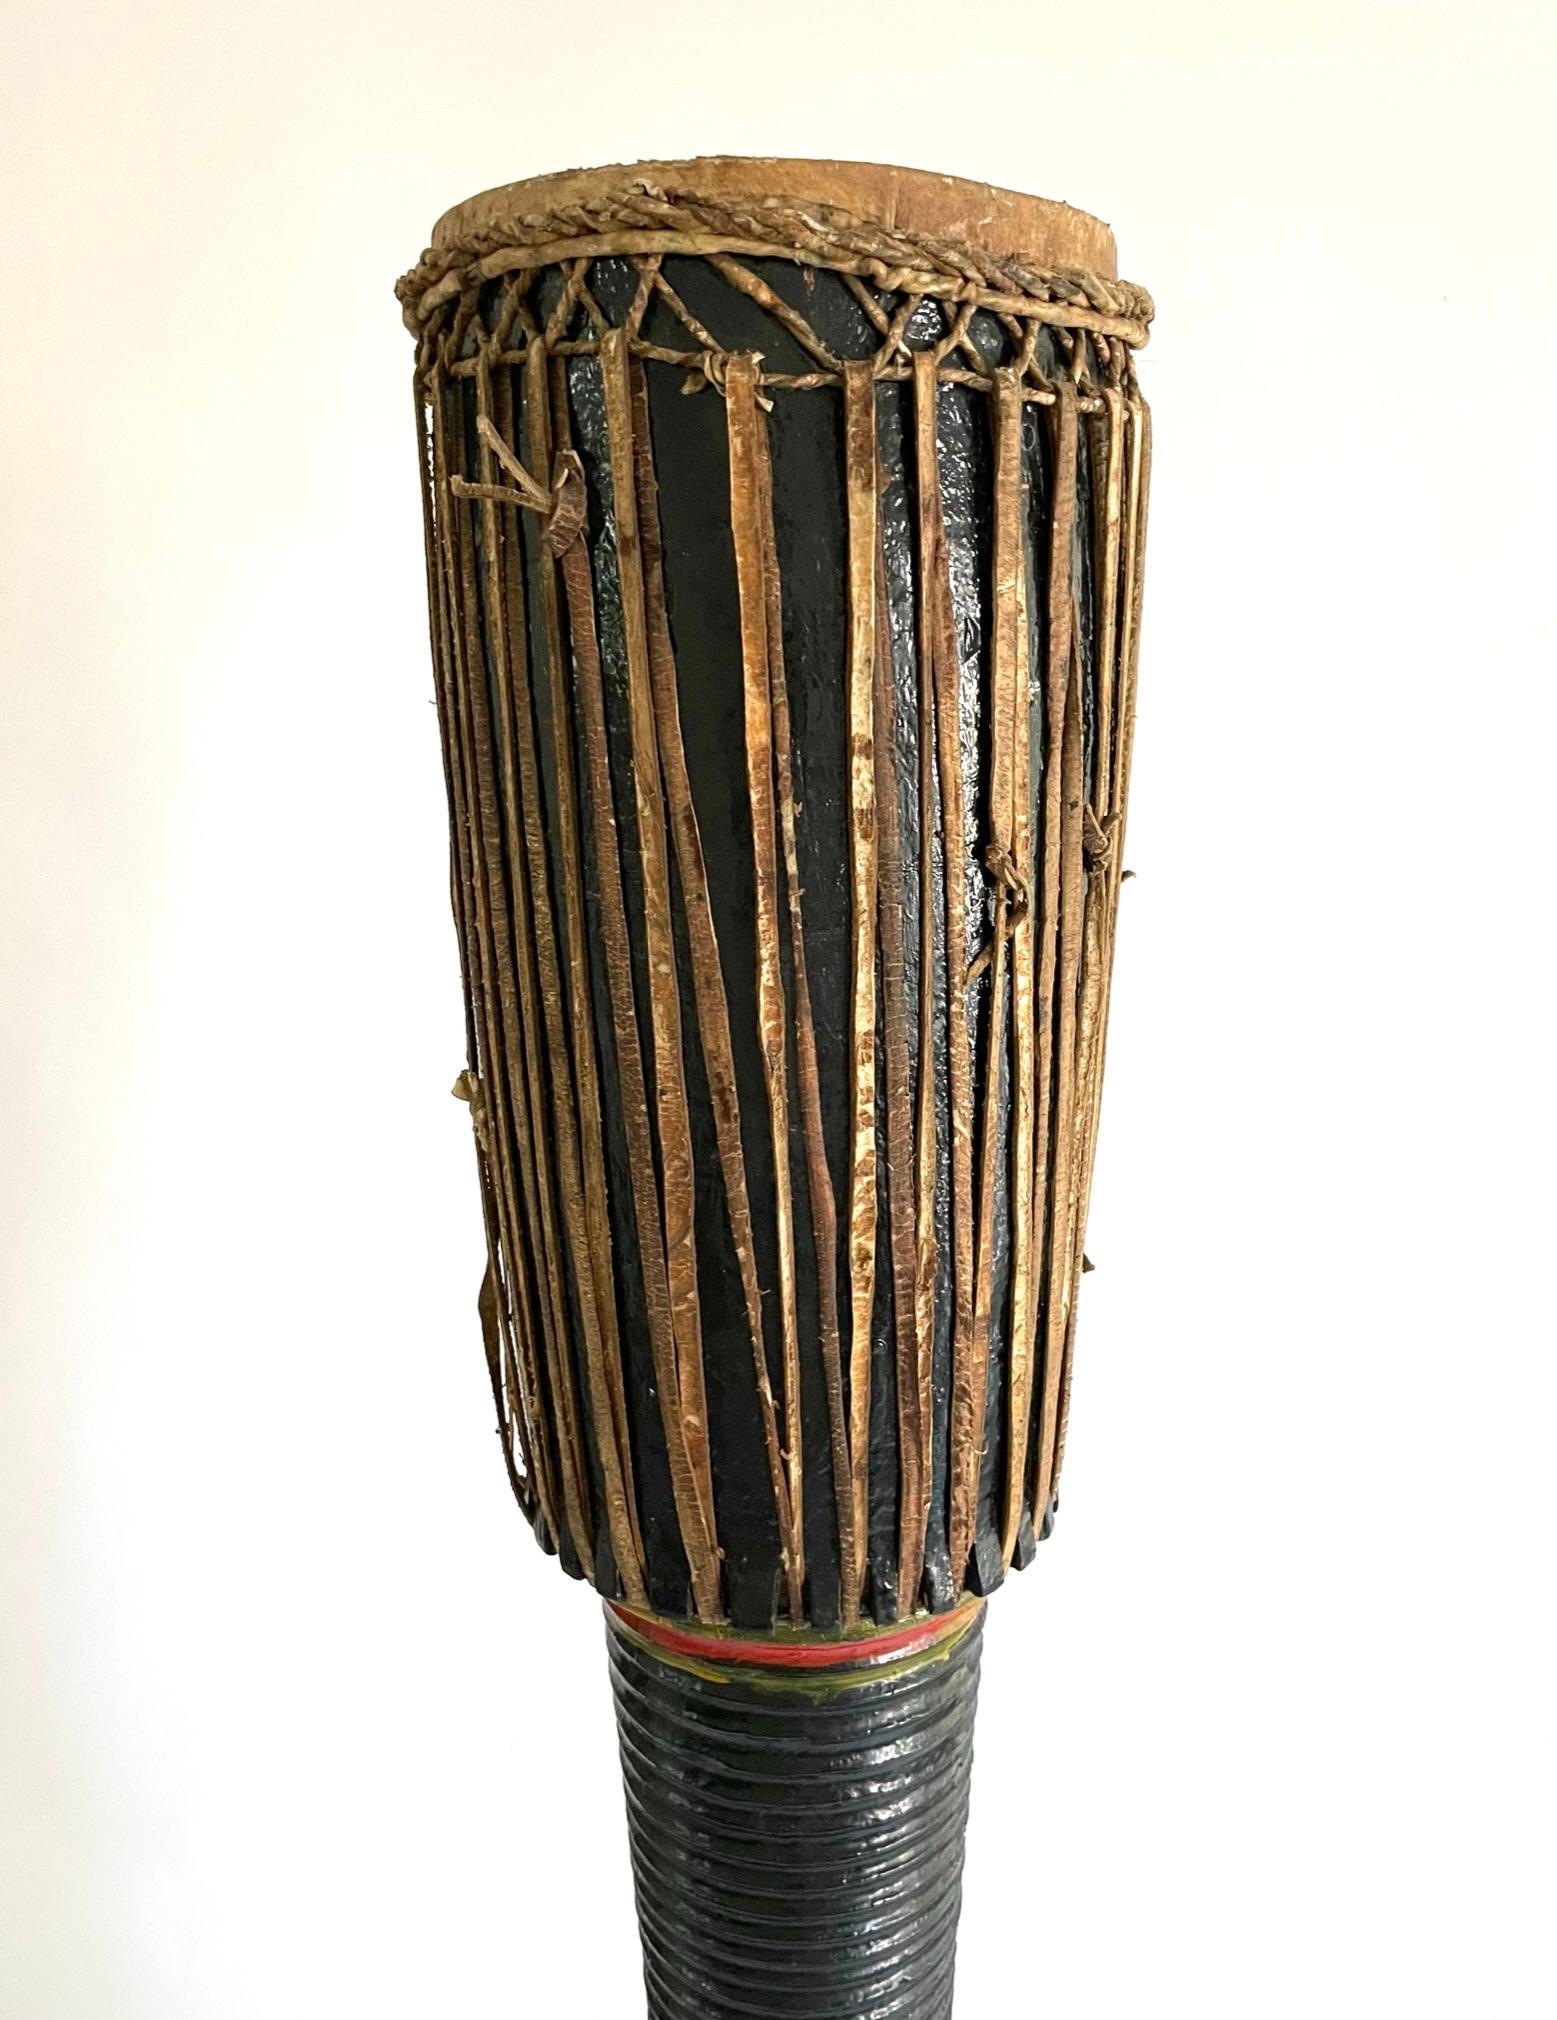 Ce tambour de temple élégamment sculpté était utilisé dans les temples bouddhistes. Il est sculpté dans du teck et laqué en noir avec des détails rayés rouges et verts. La partie supérieure et les sangles sont en cuir. Ces gigantesques tambours à